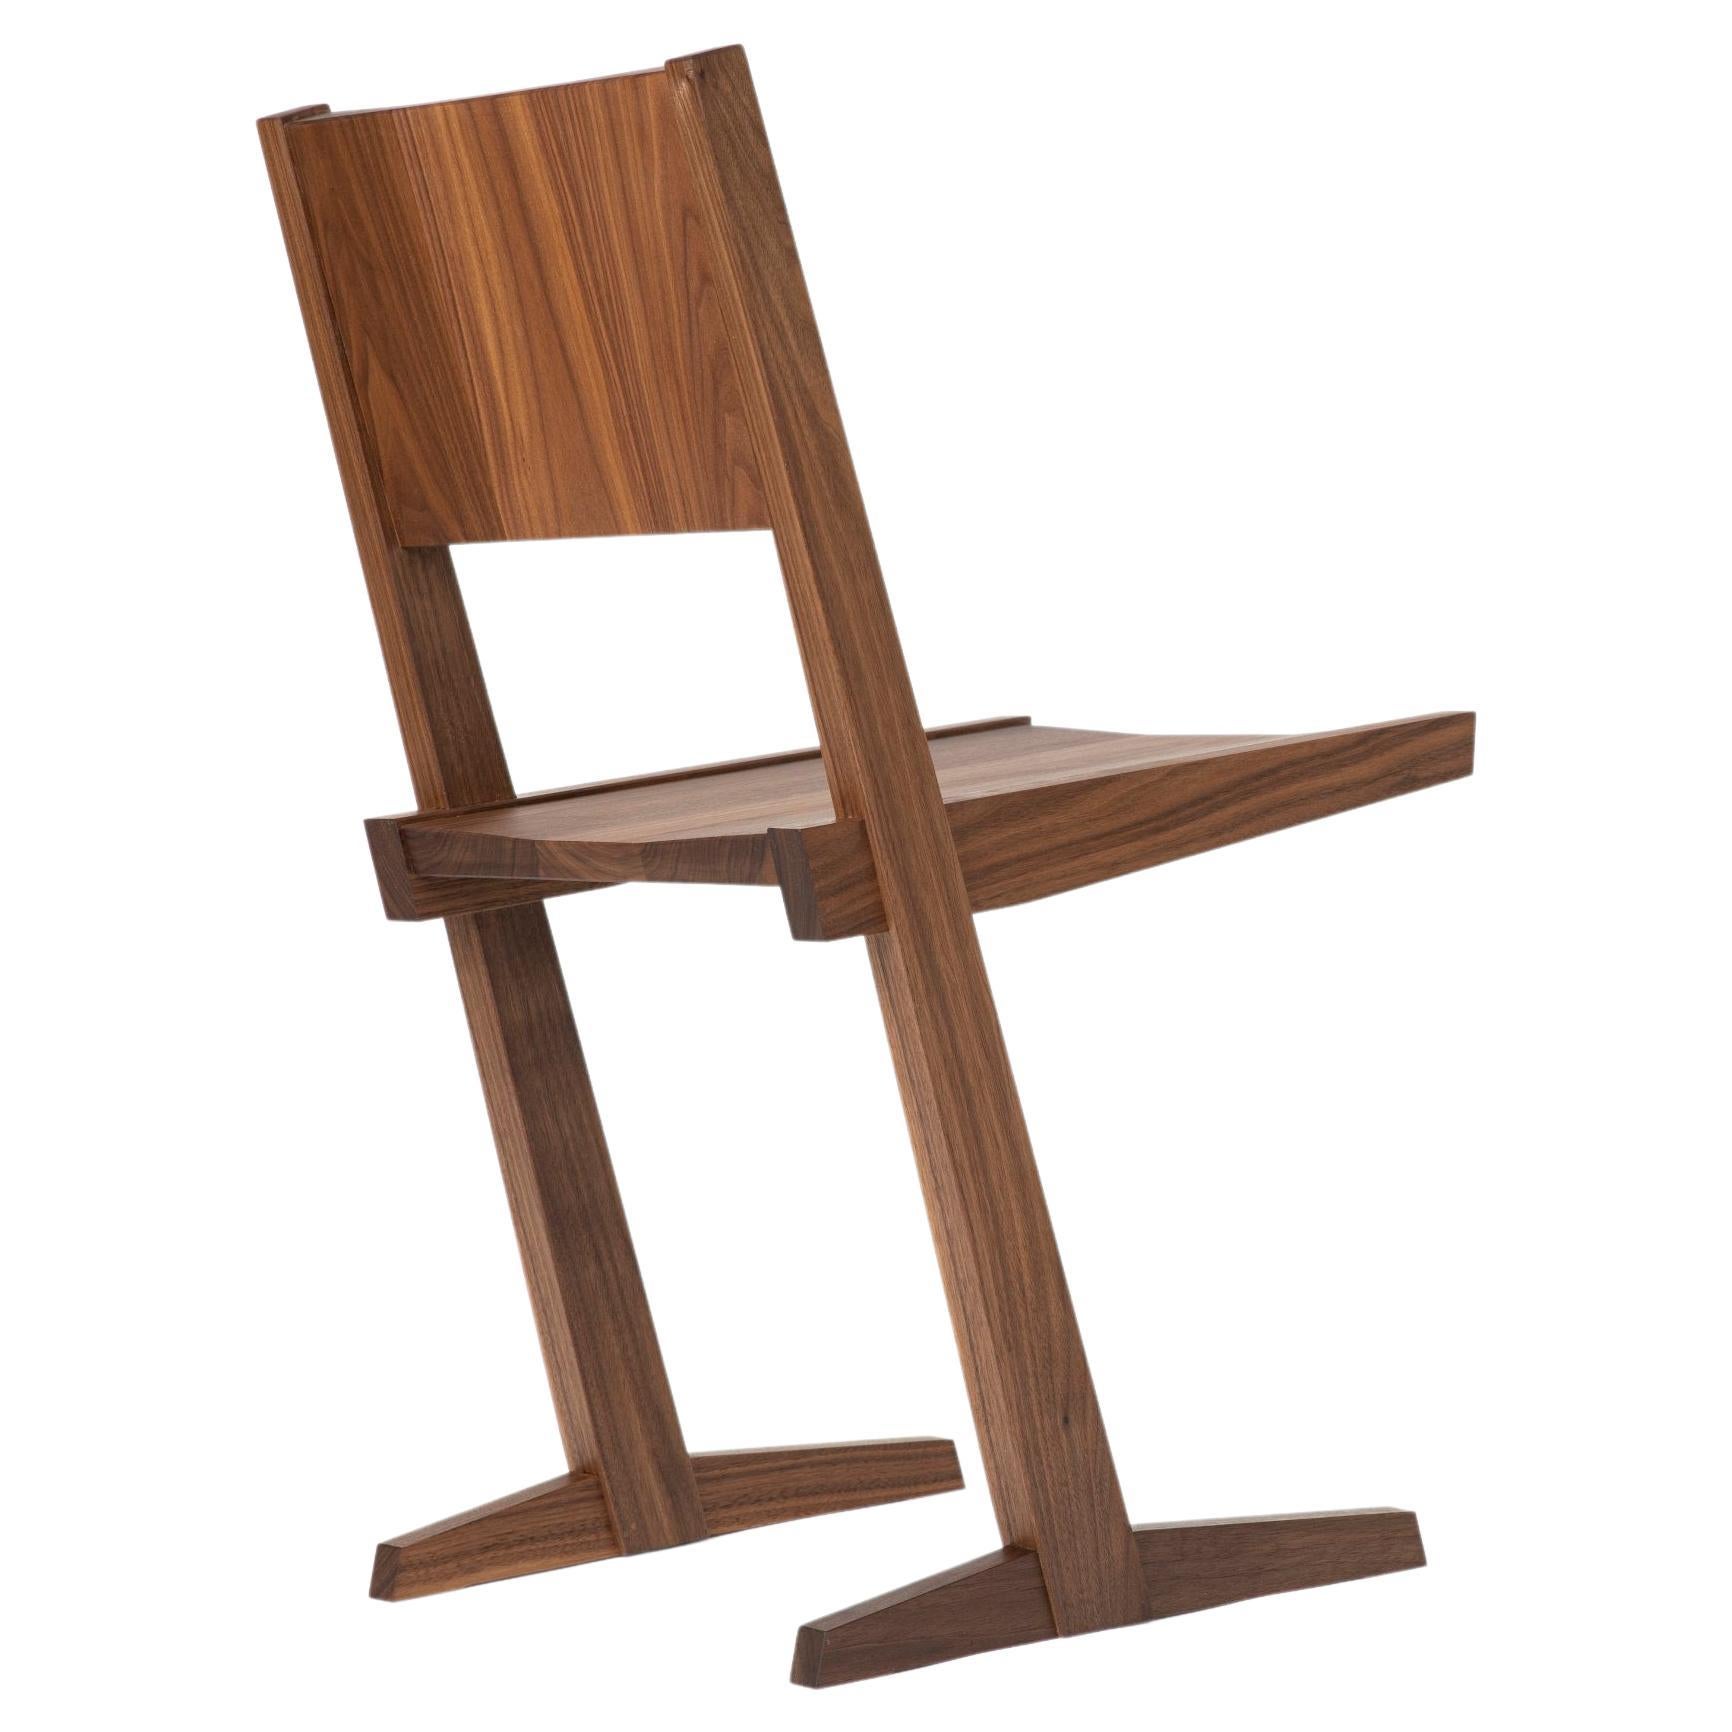 Chair#3